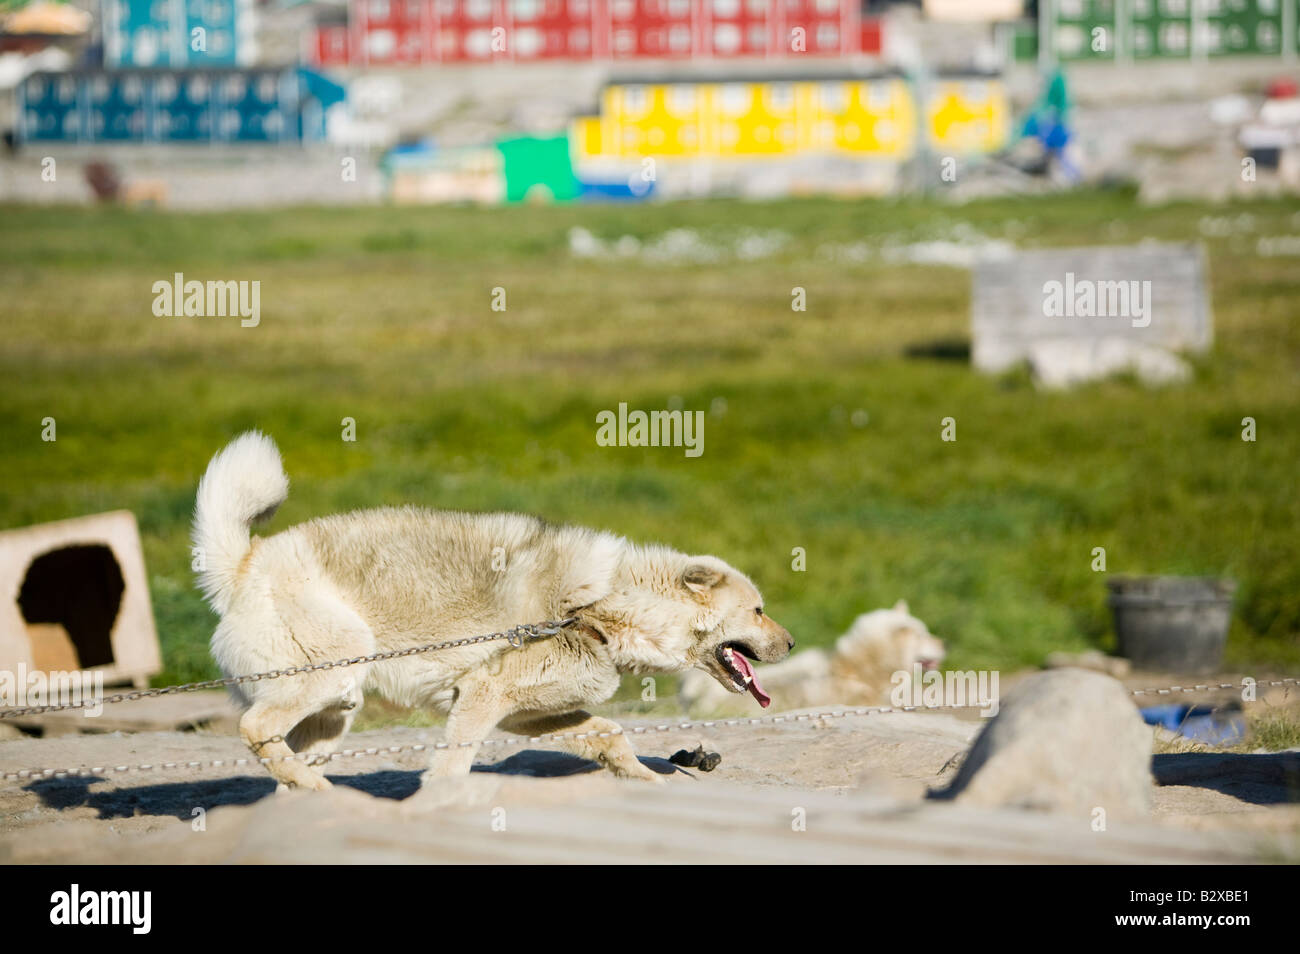 Husky chiens de traîneau inuits traditionnels en face de maisons colorées à Ilulissat Groenland Groenland Banque D'Images